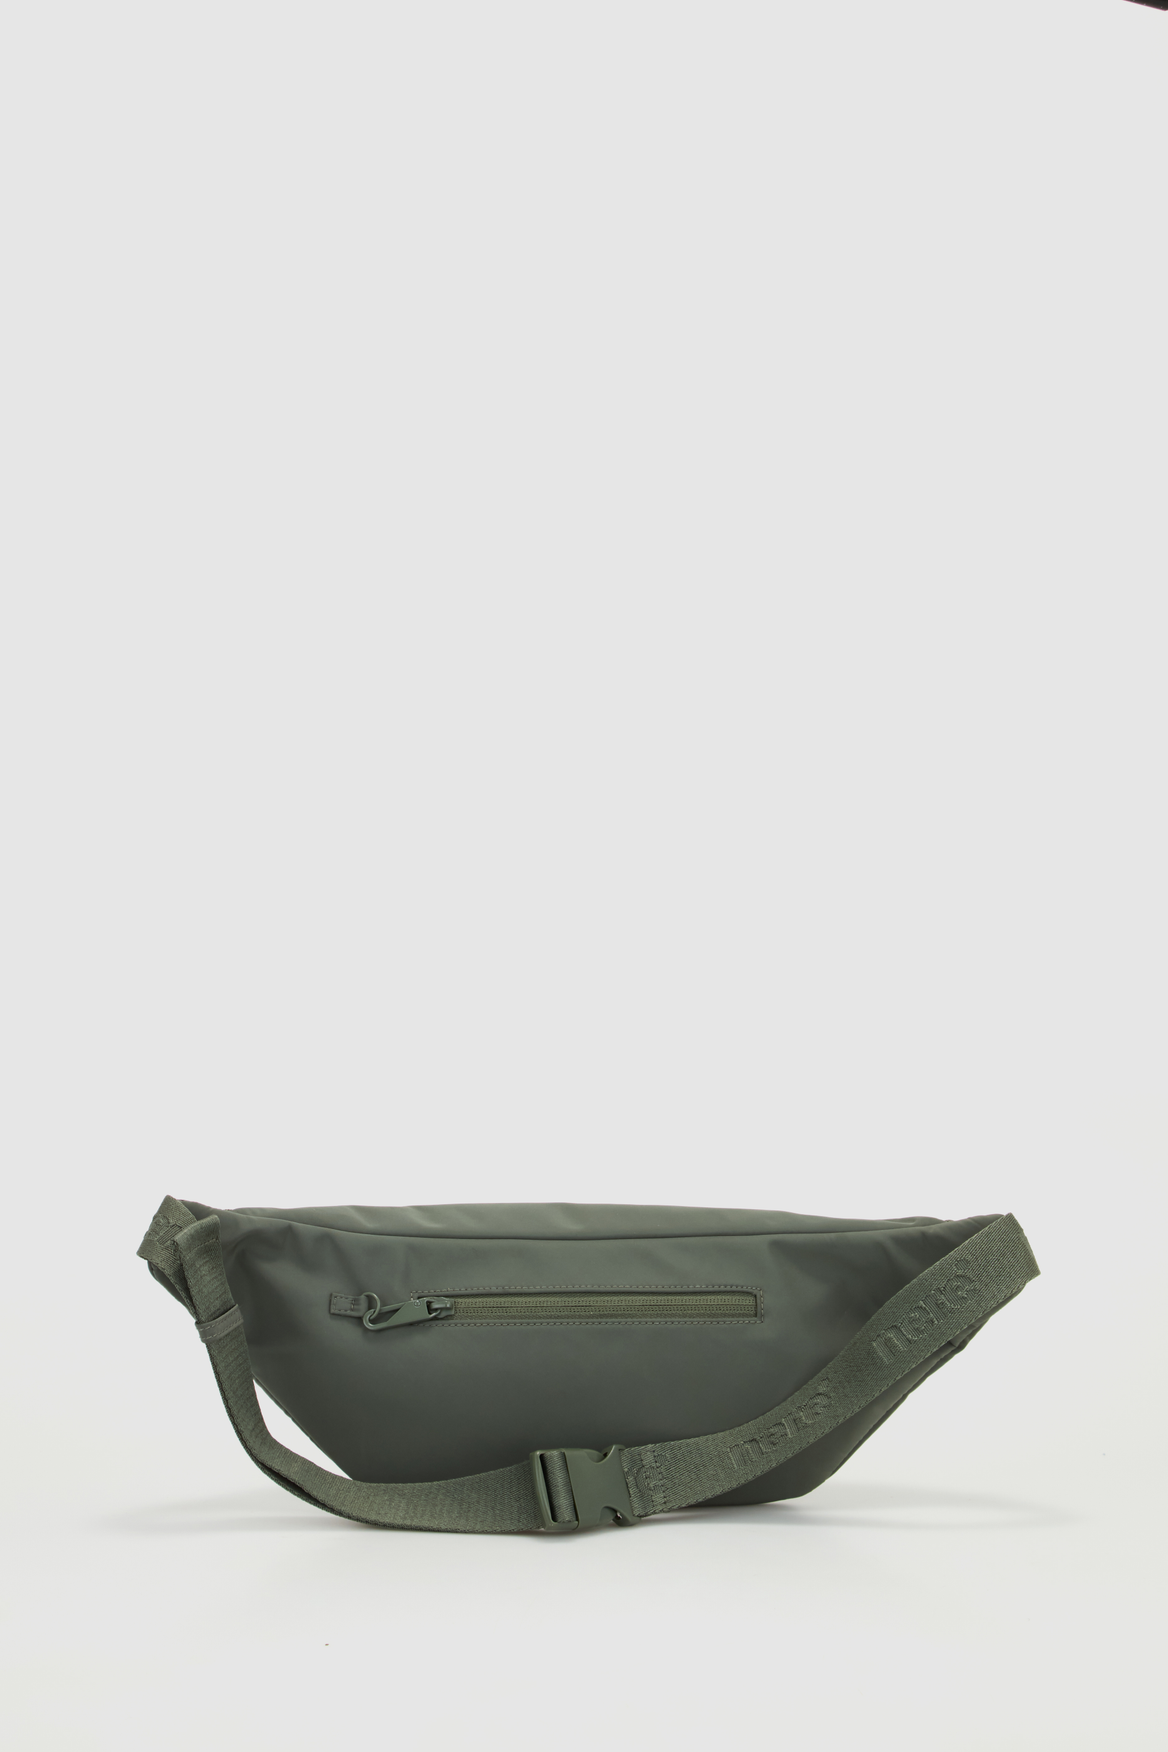 Nere Seeker RFID Bumbag – Strandbags Australia